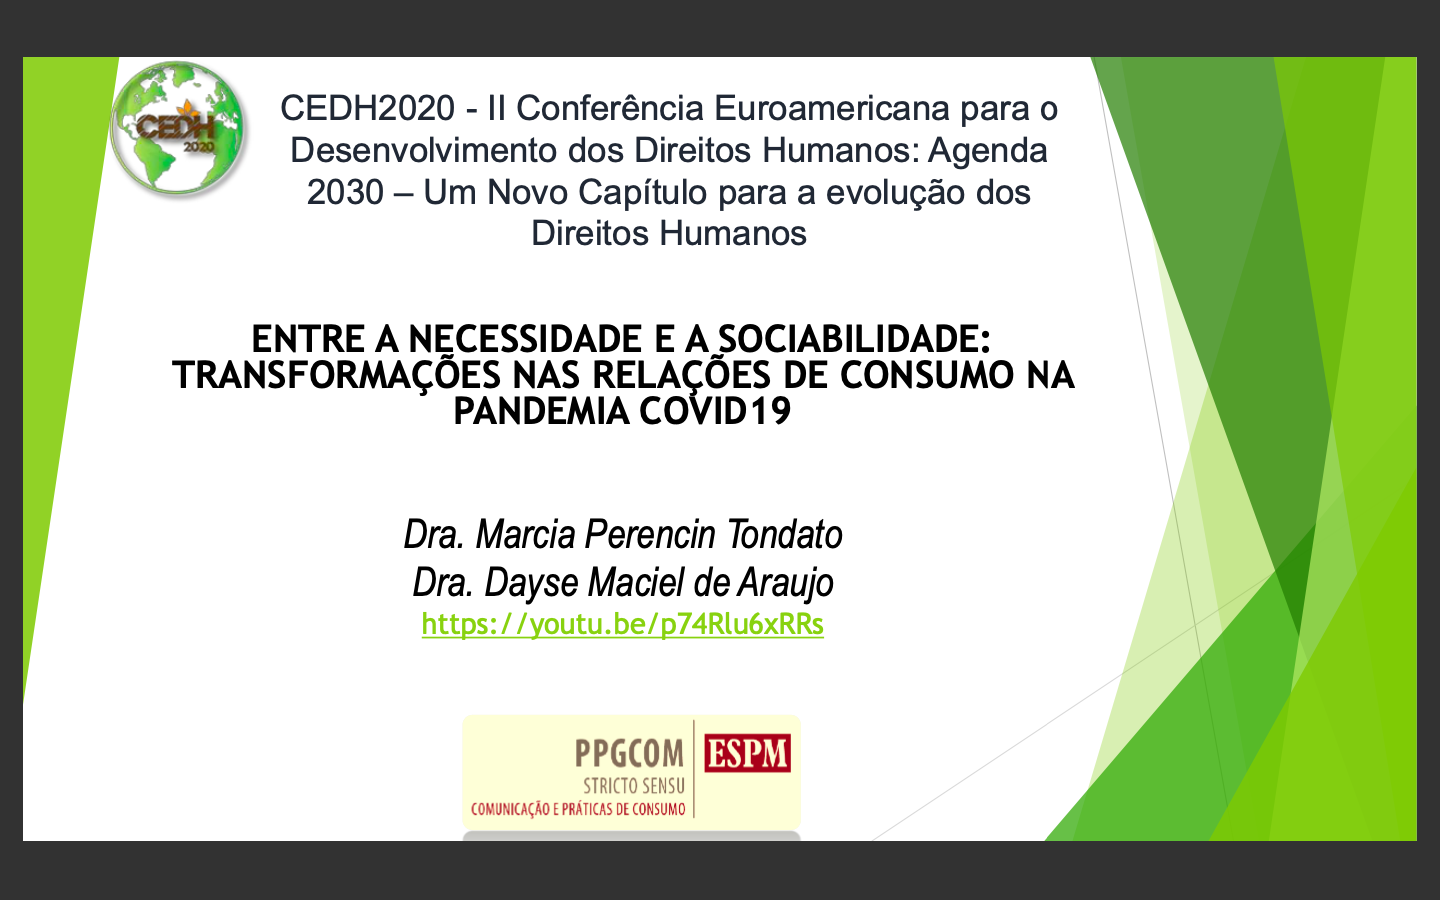 Estudo sobre transformações nas relações de consumo na pandemia por Covid-19